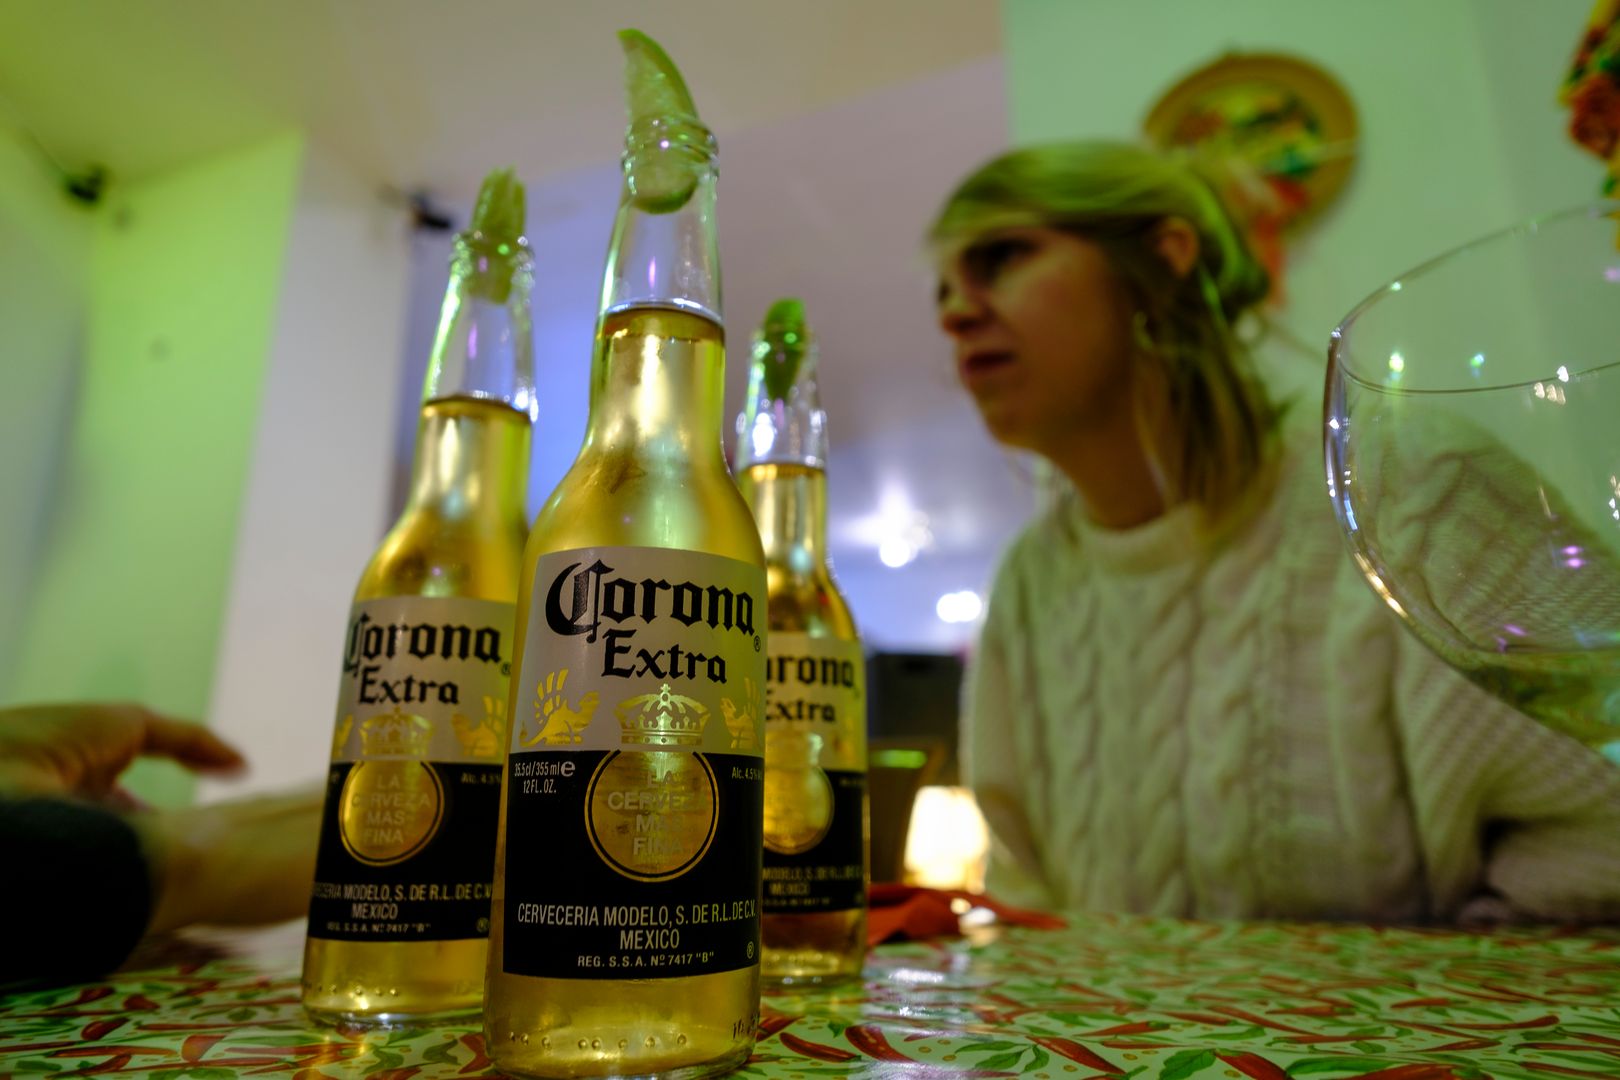 Producenci piwa "Corona" zostali zmuszeni wstrzymać produkcję